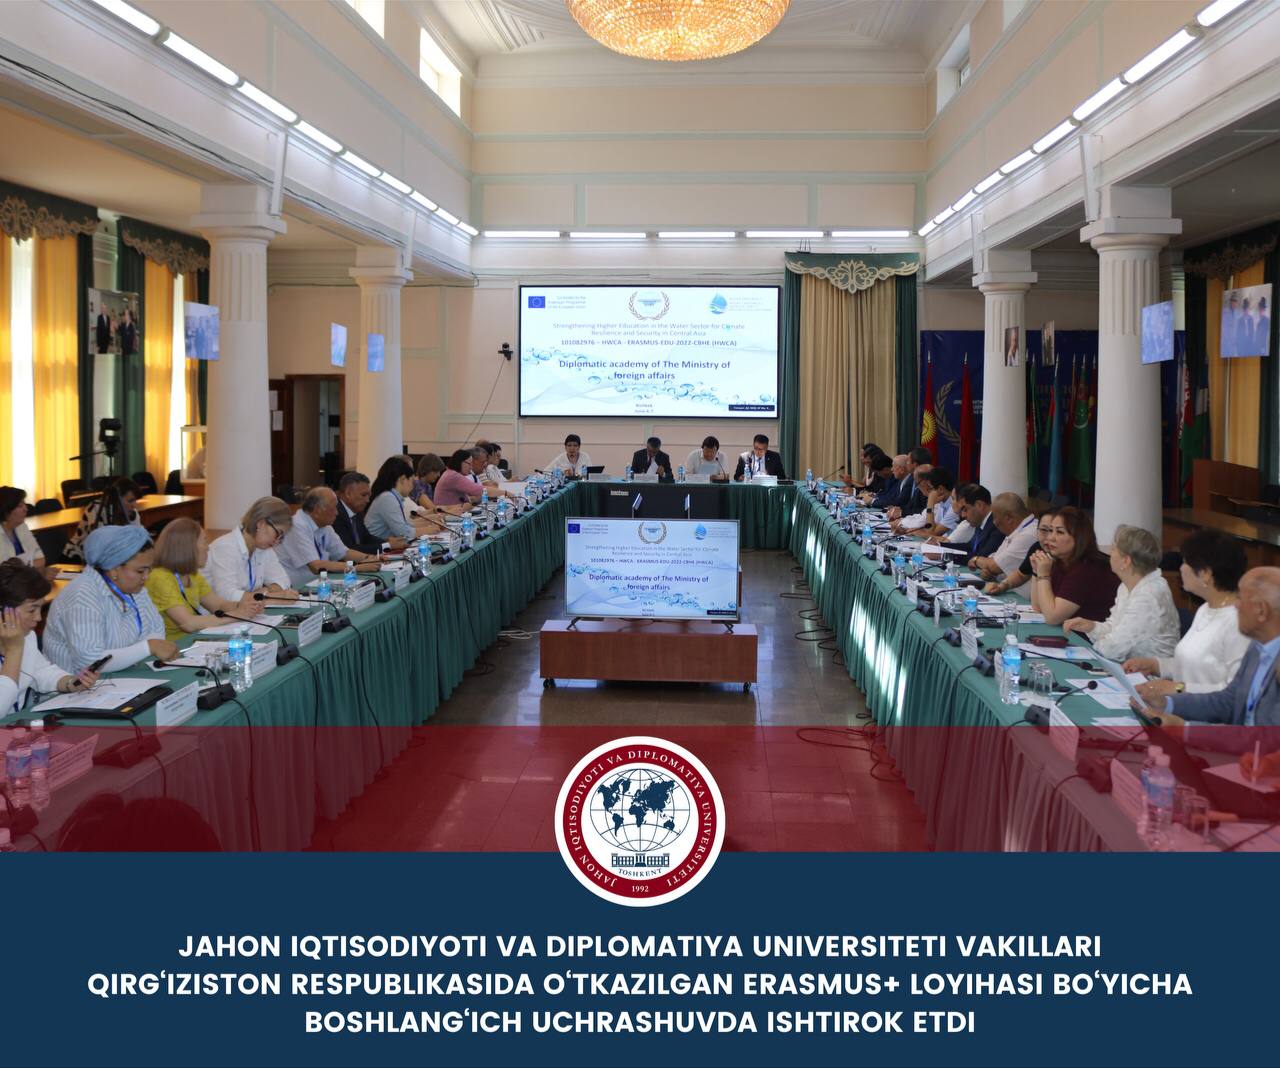 Представители Университета мировой экономики и дипломатии приняли участие в стартовой встрече проекта Erasmus+, состоявшейся в Кыргызской Республике